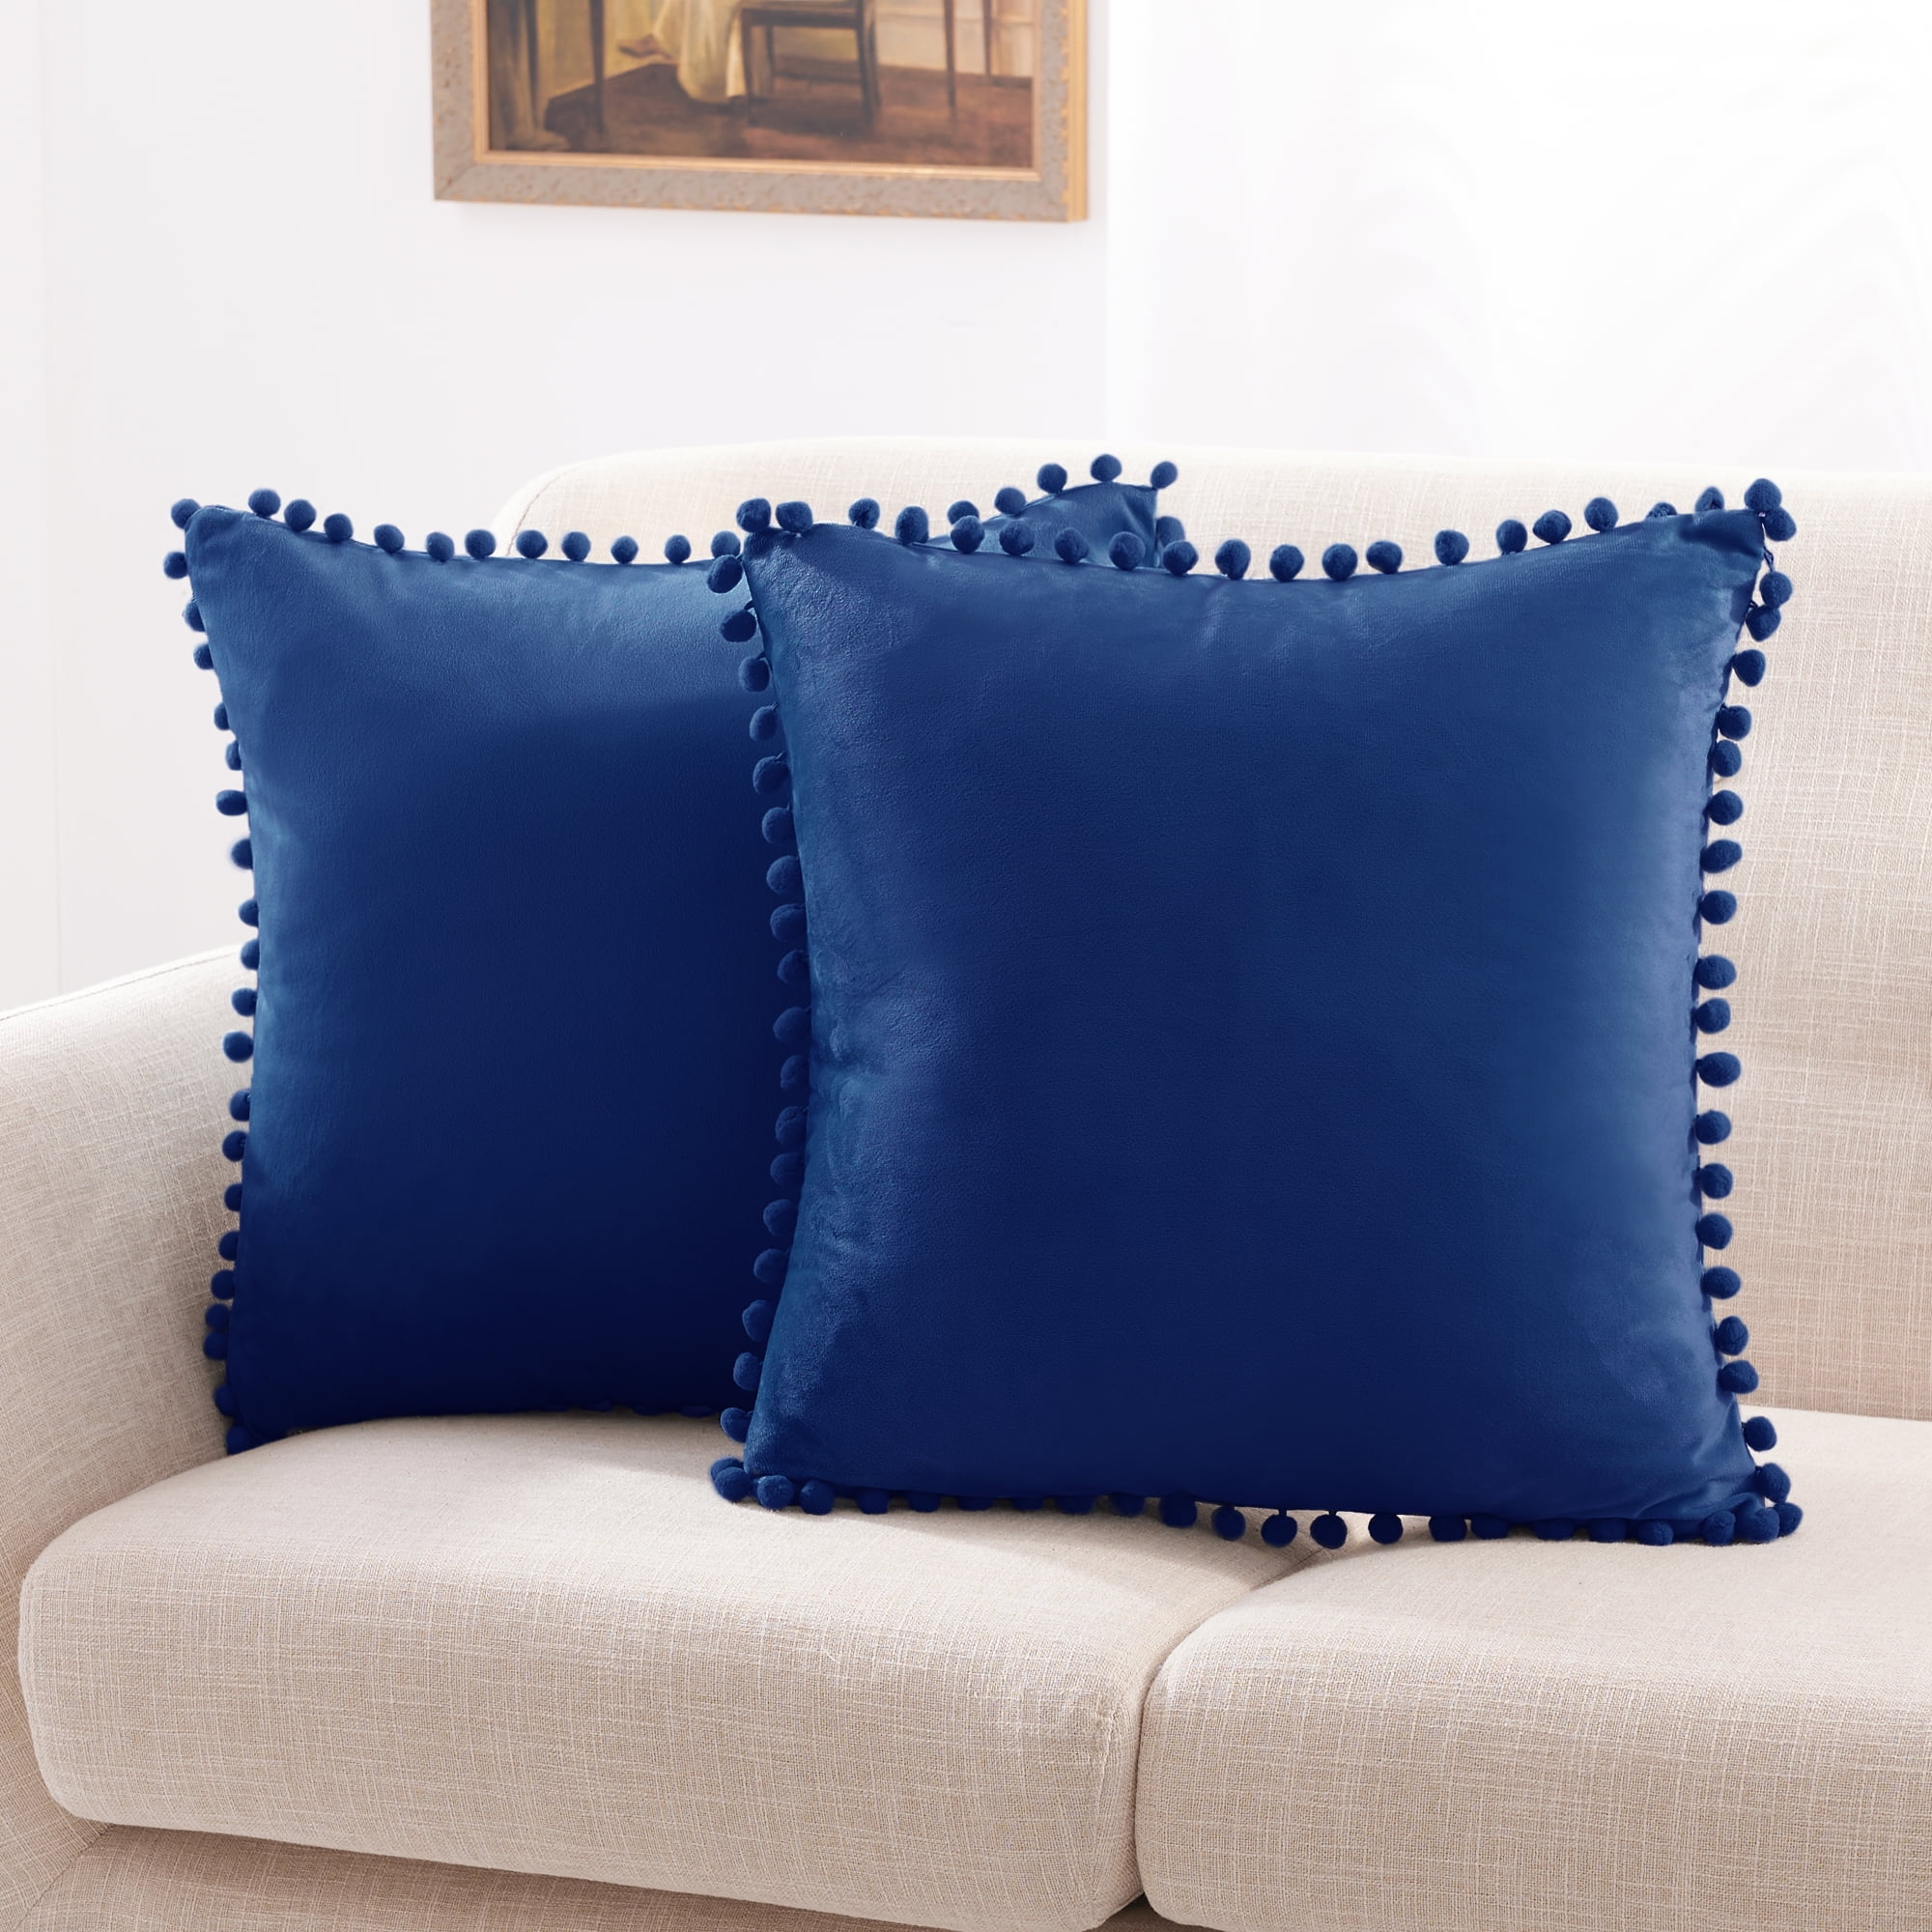 Decorative Soft Farmhouse Square Pom-poms Cover for Bedroom 24” x 24” Haze Blue Deconovo Velvet Throw Pillow Covers Set of 2 